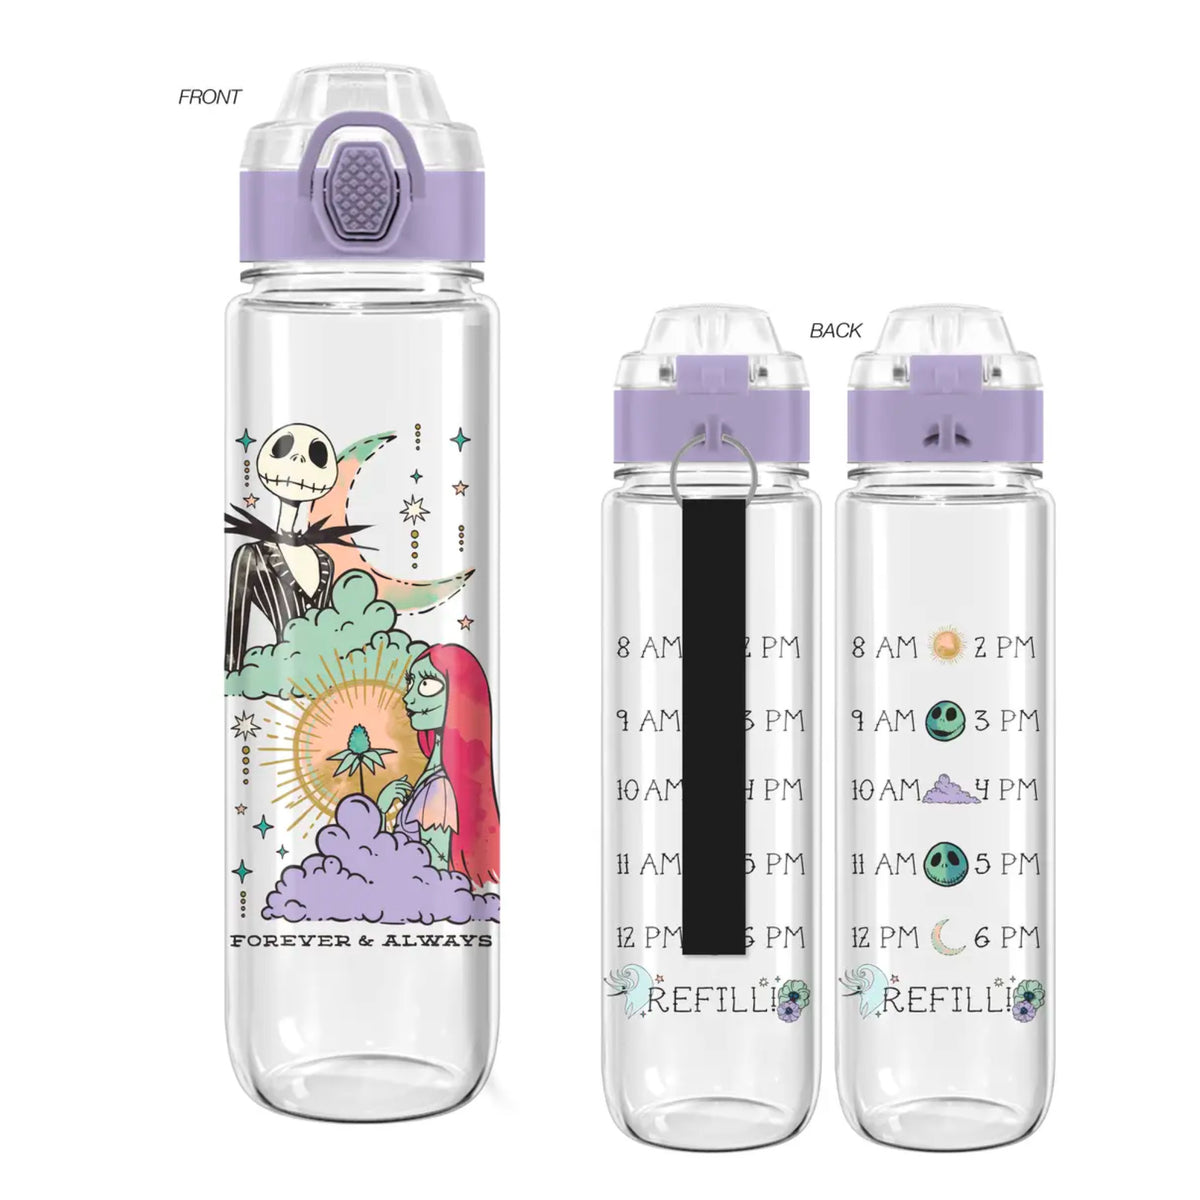 Eeyore - Children's Tumbler, Kid's Water Bottle, Water Bottle, Toddler